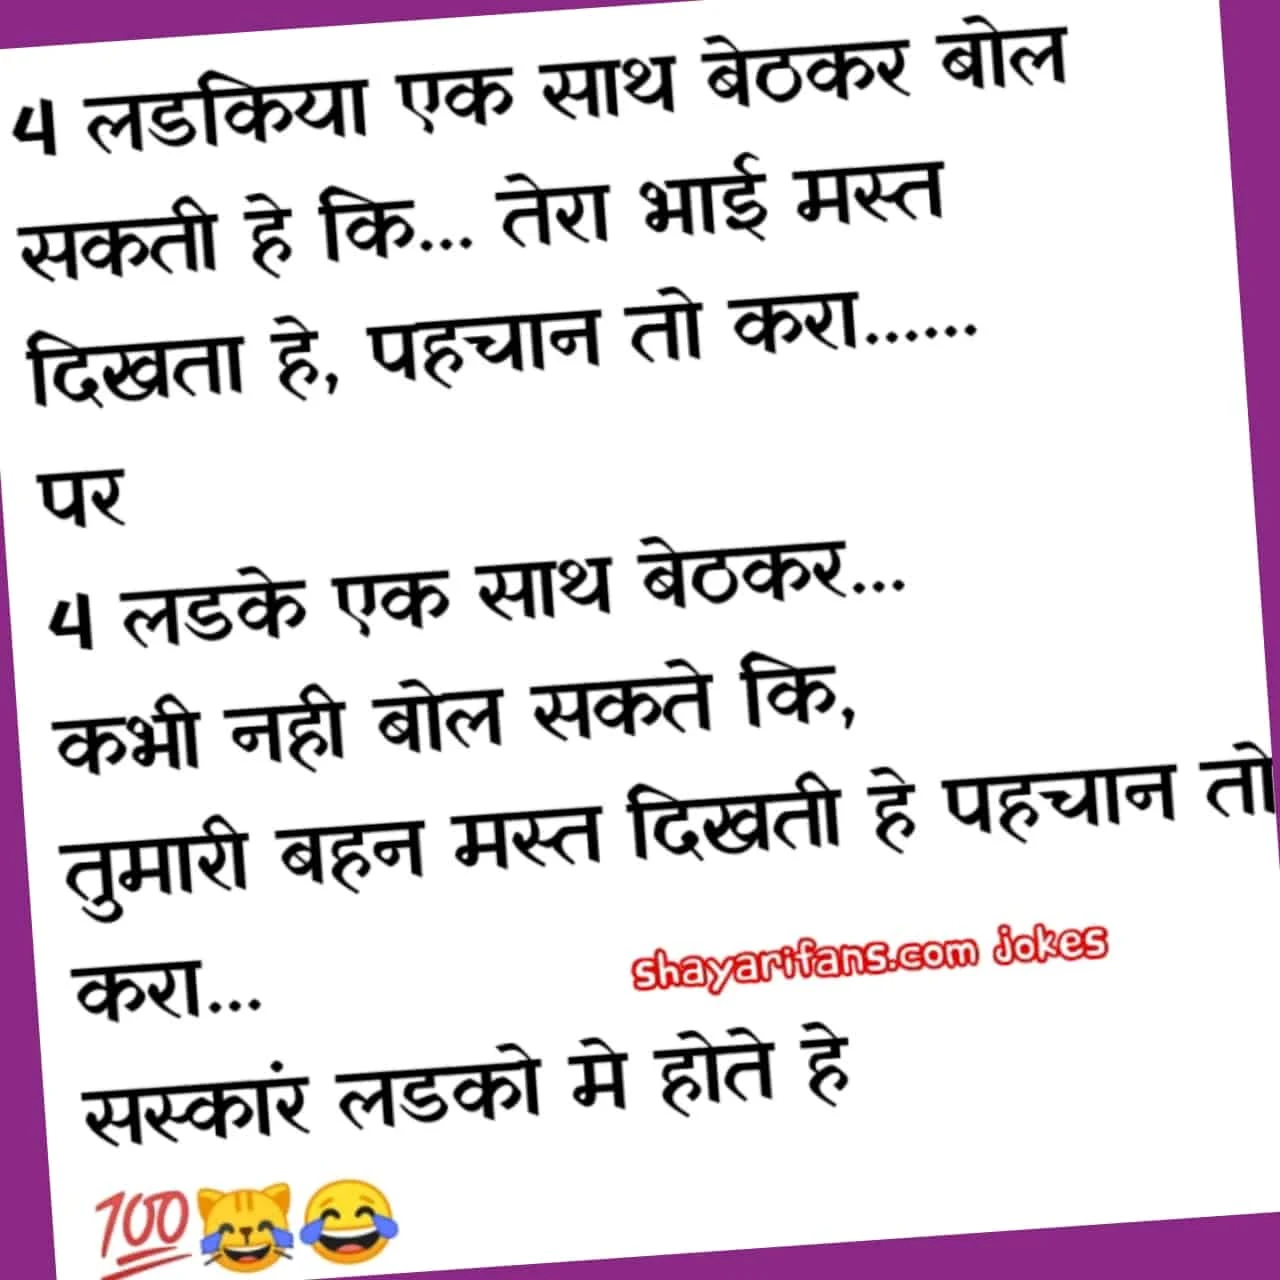 Jokes in hindi for whatsapp Part 5  |  लडकिया एक साथ बेठकर बोल सकती हे.... Shayarifans